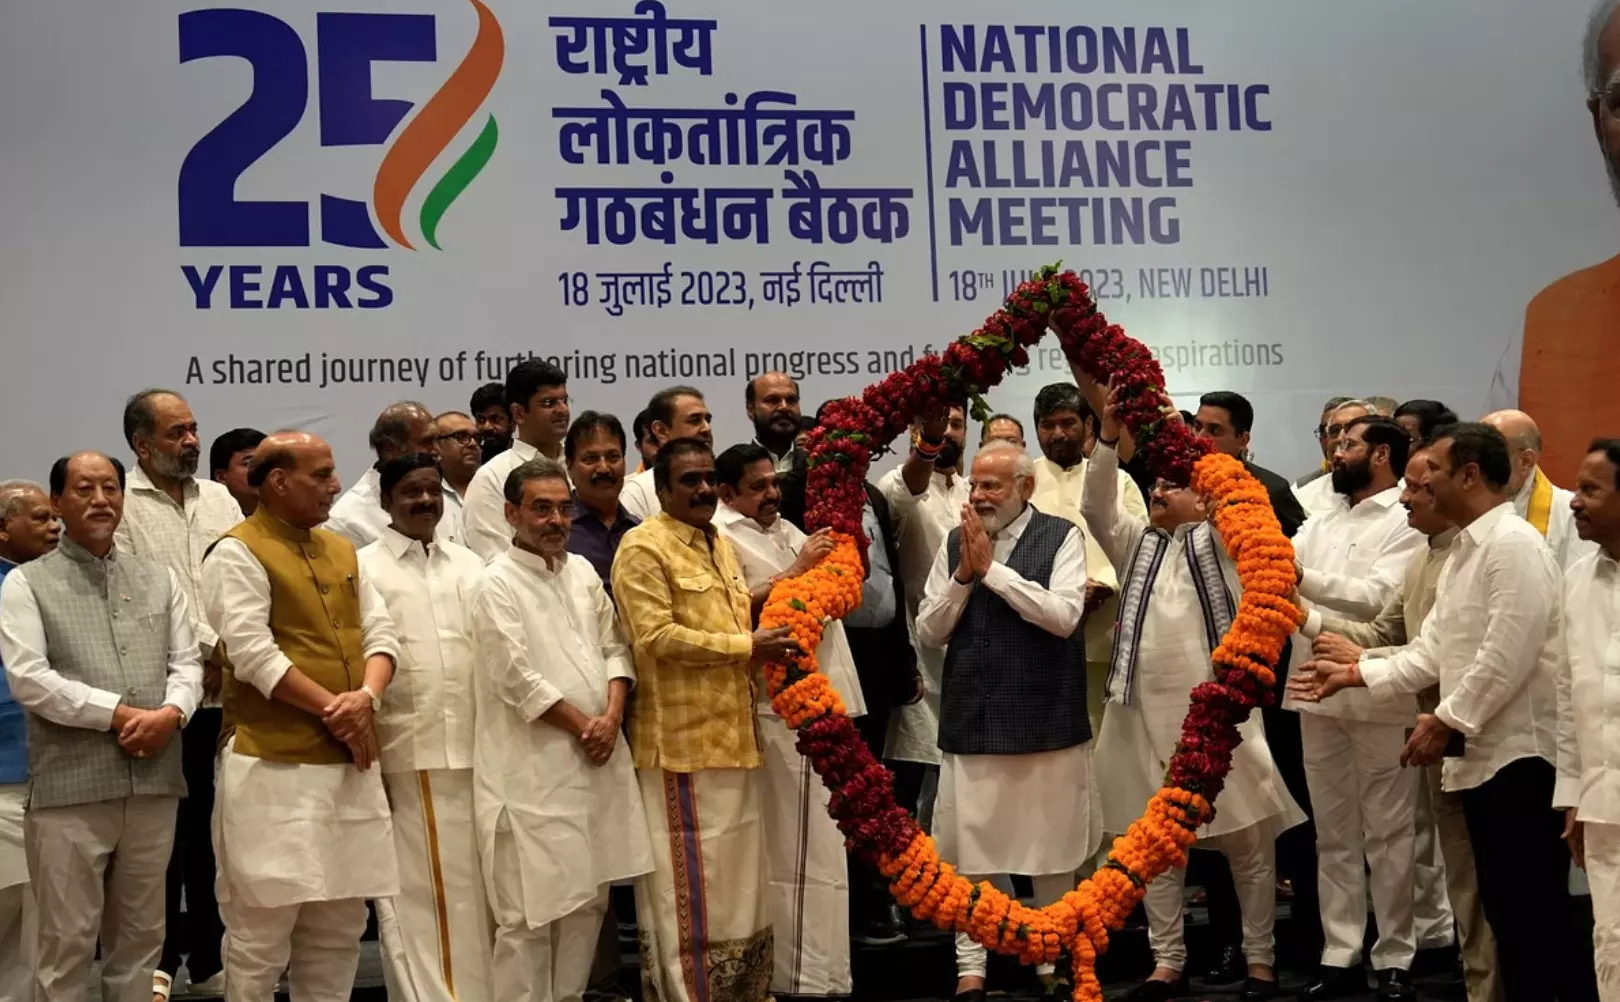 NDA Meeting: पीएम मोदी की अध्यक्षता में दिल्ली में 38 दलों की बैठक शुरू, जानें- क्या है BJP का प्लान?